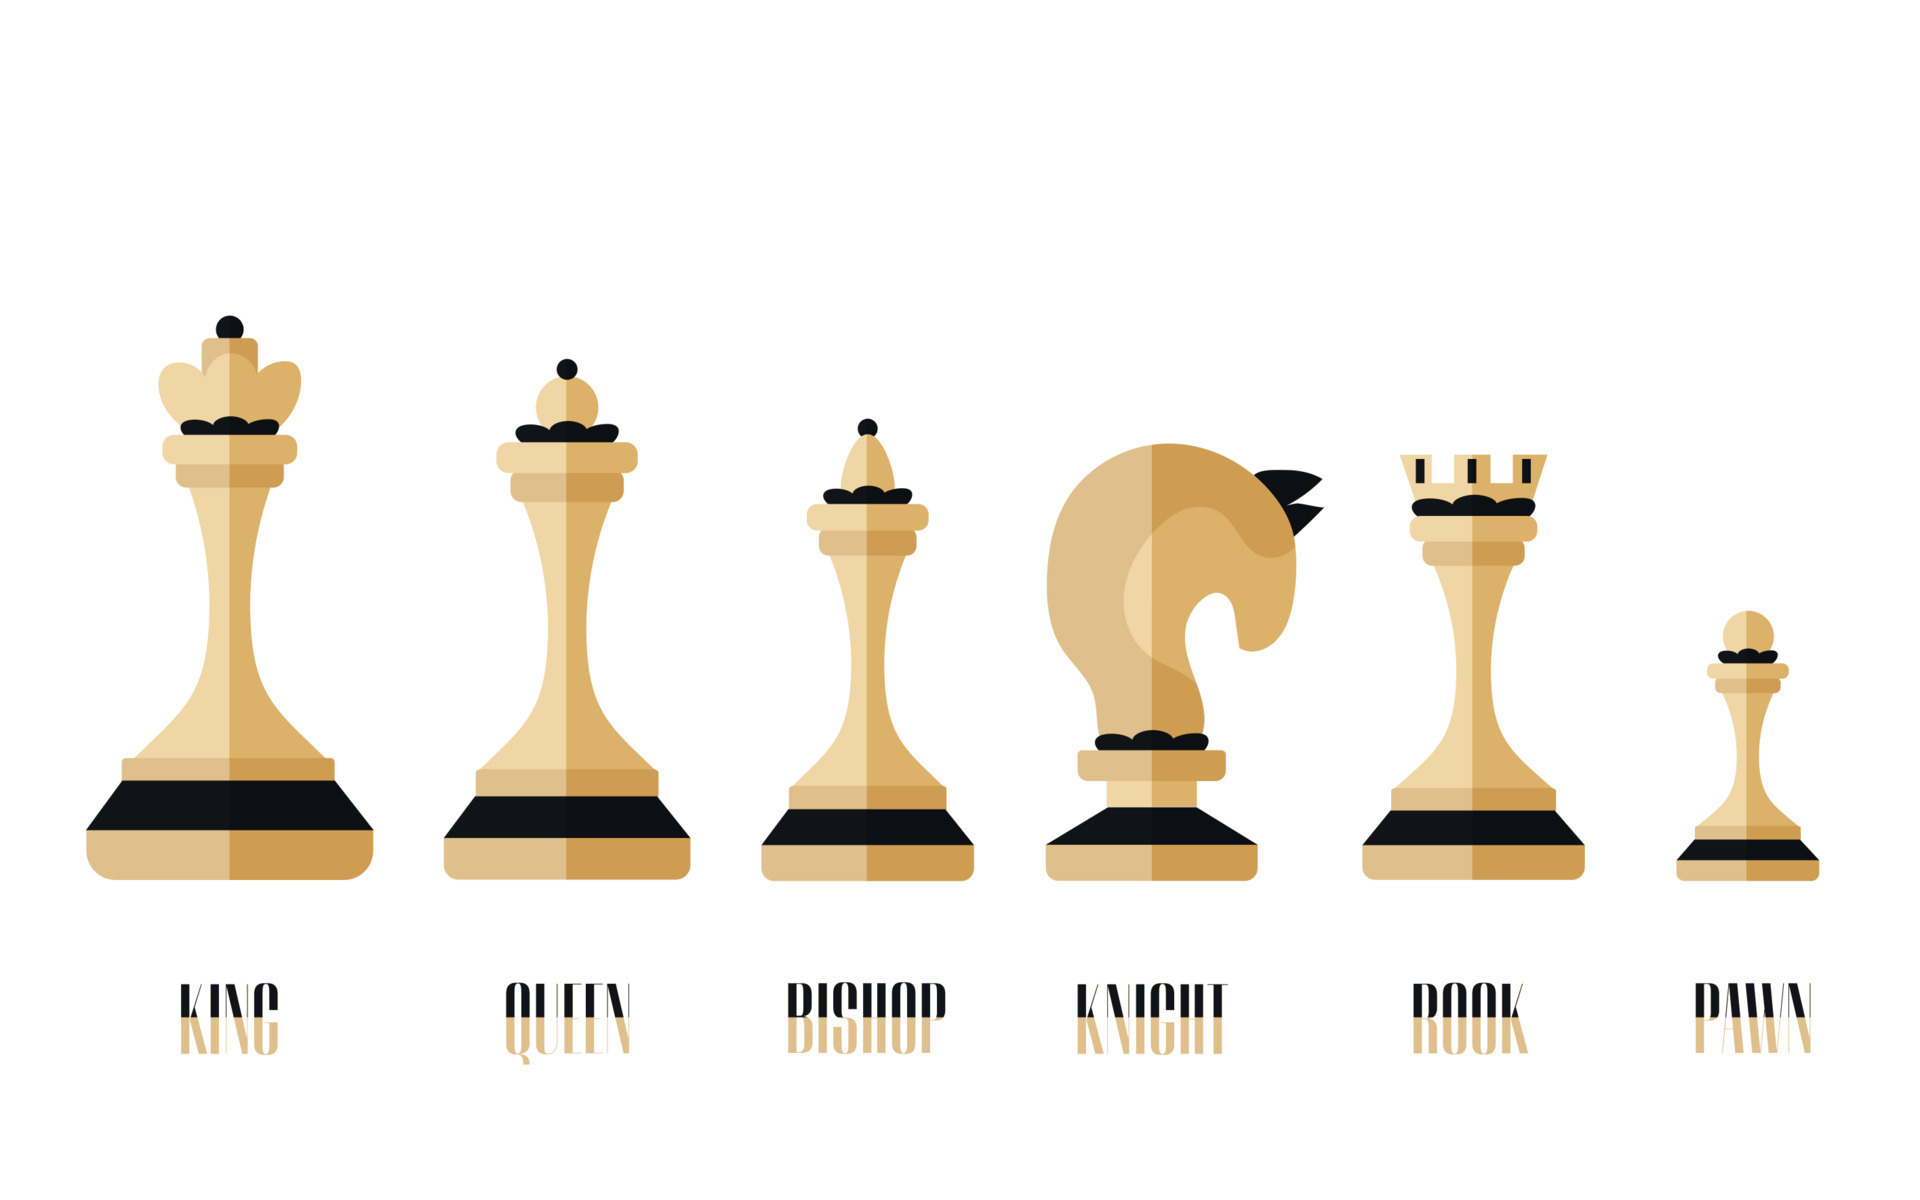 el icono del ajedrez incluía rey, reina, obispo, caballero, torre, peón.  colección de ajedrez blanco y negro con nombre de texto. juego de ajedrez  de siluetas sobre fondo blanco. ilustración vectorial plana.